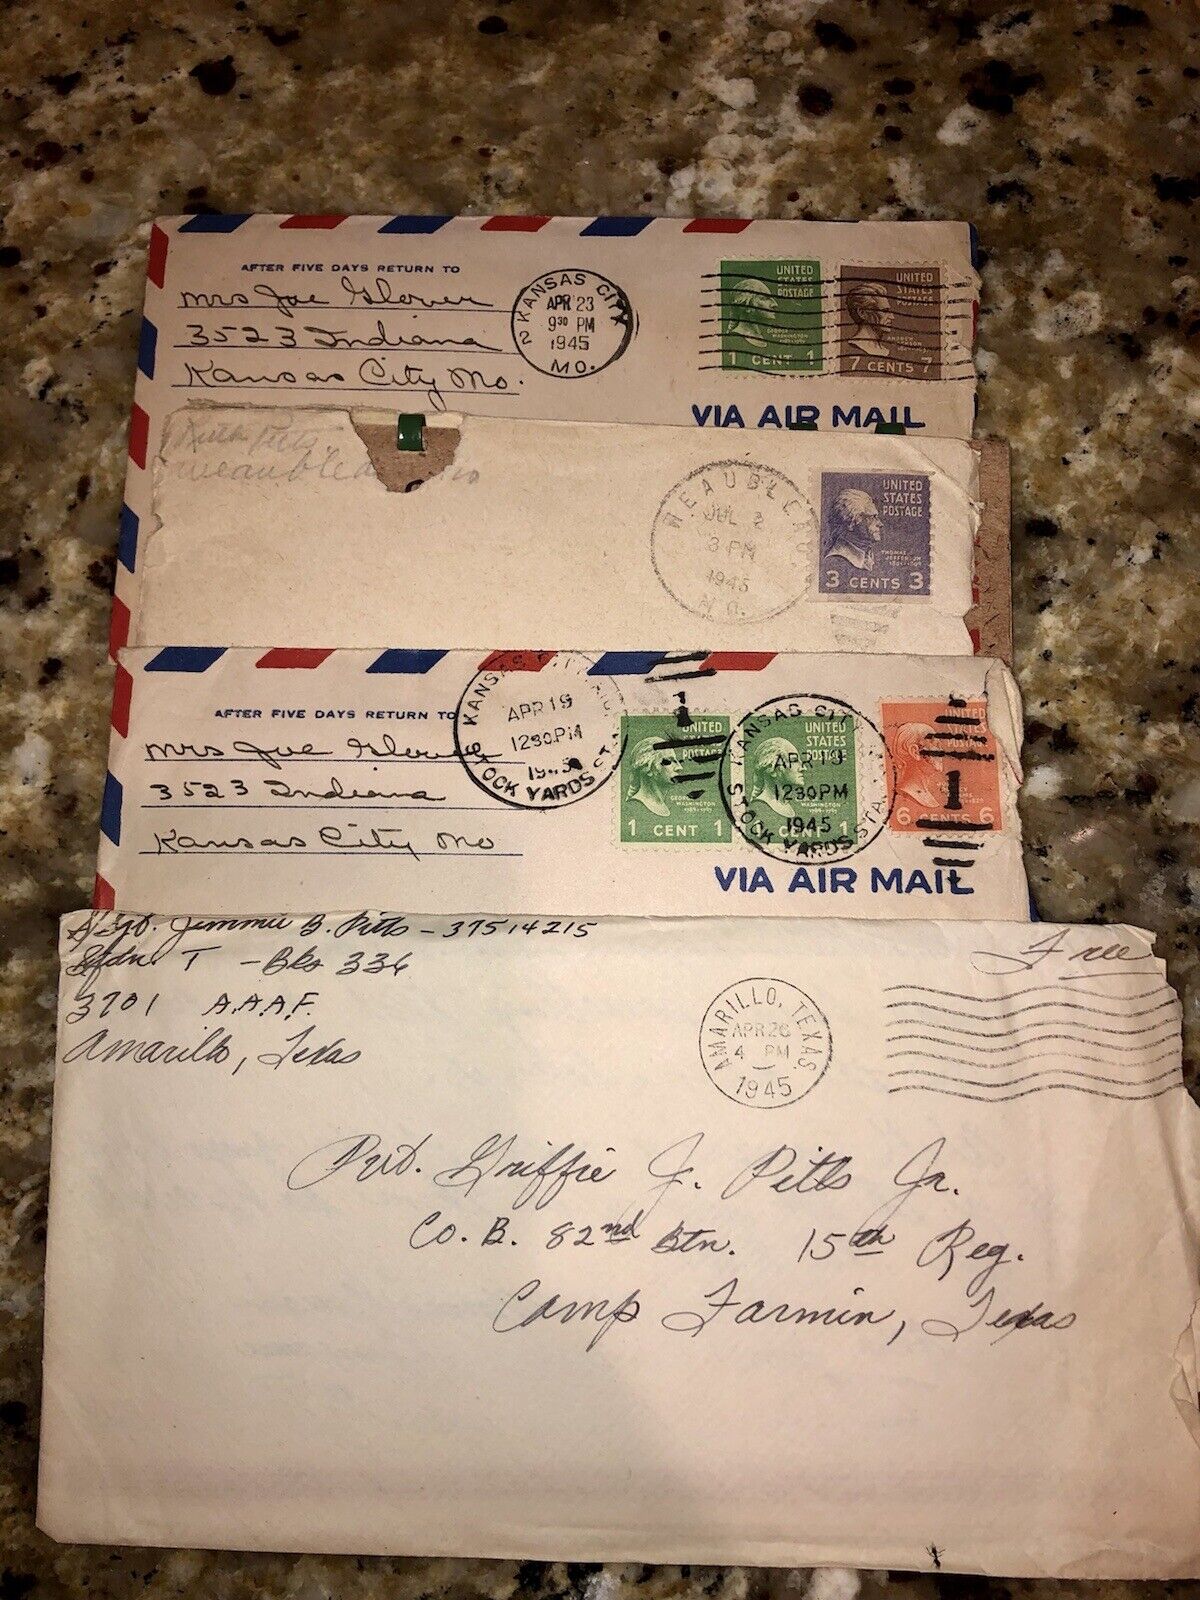 WW2 Era Letters